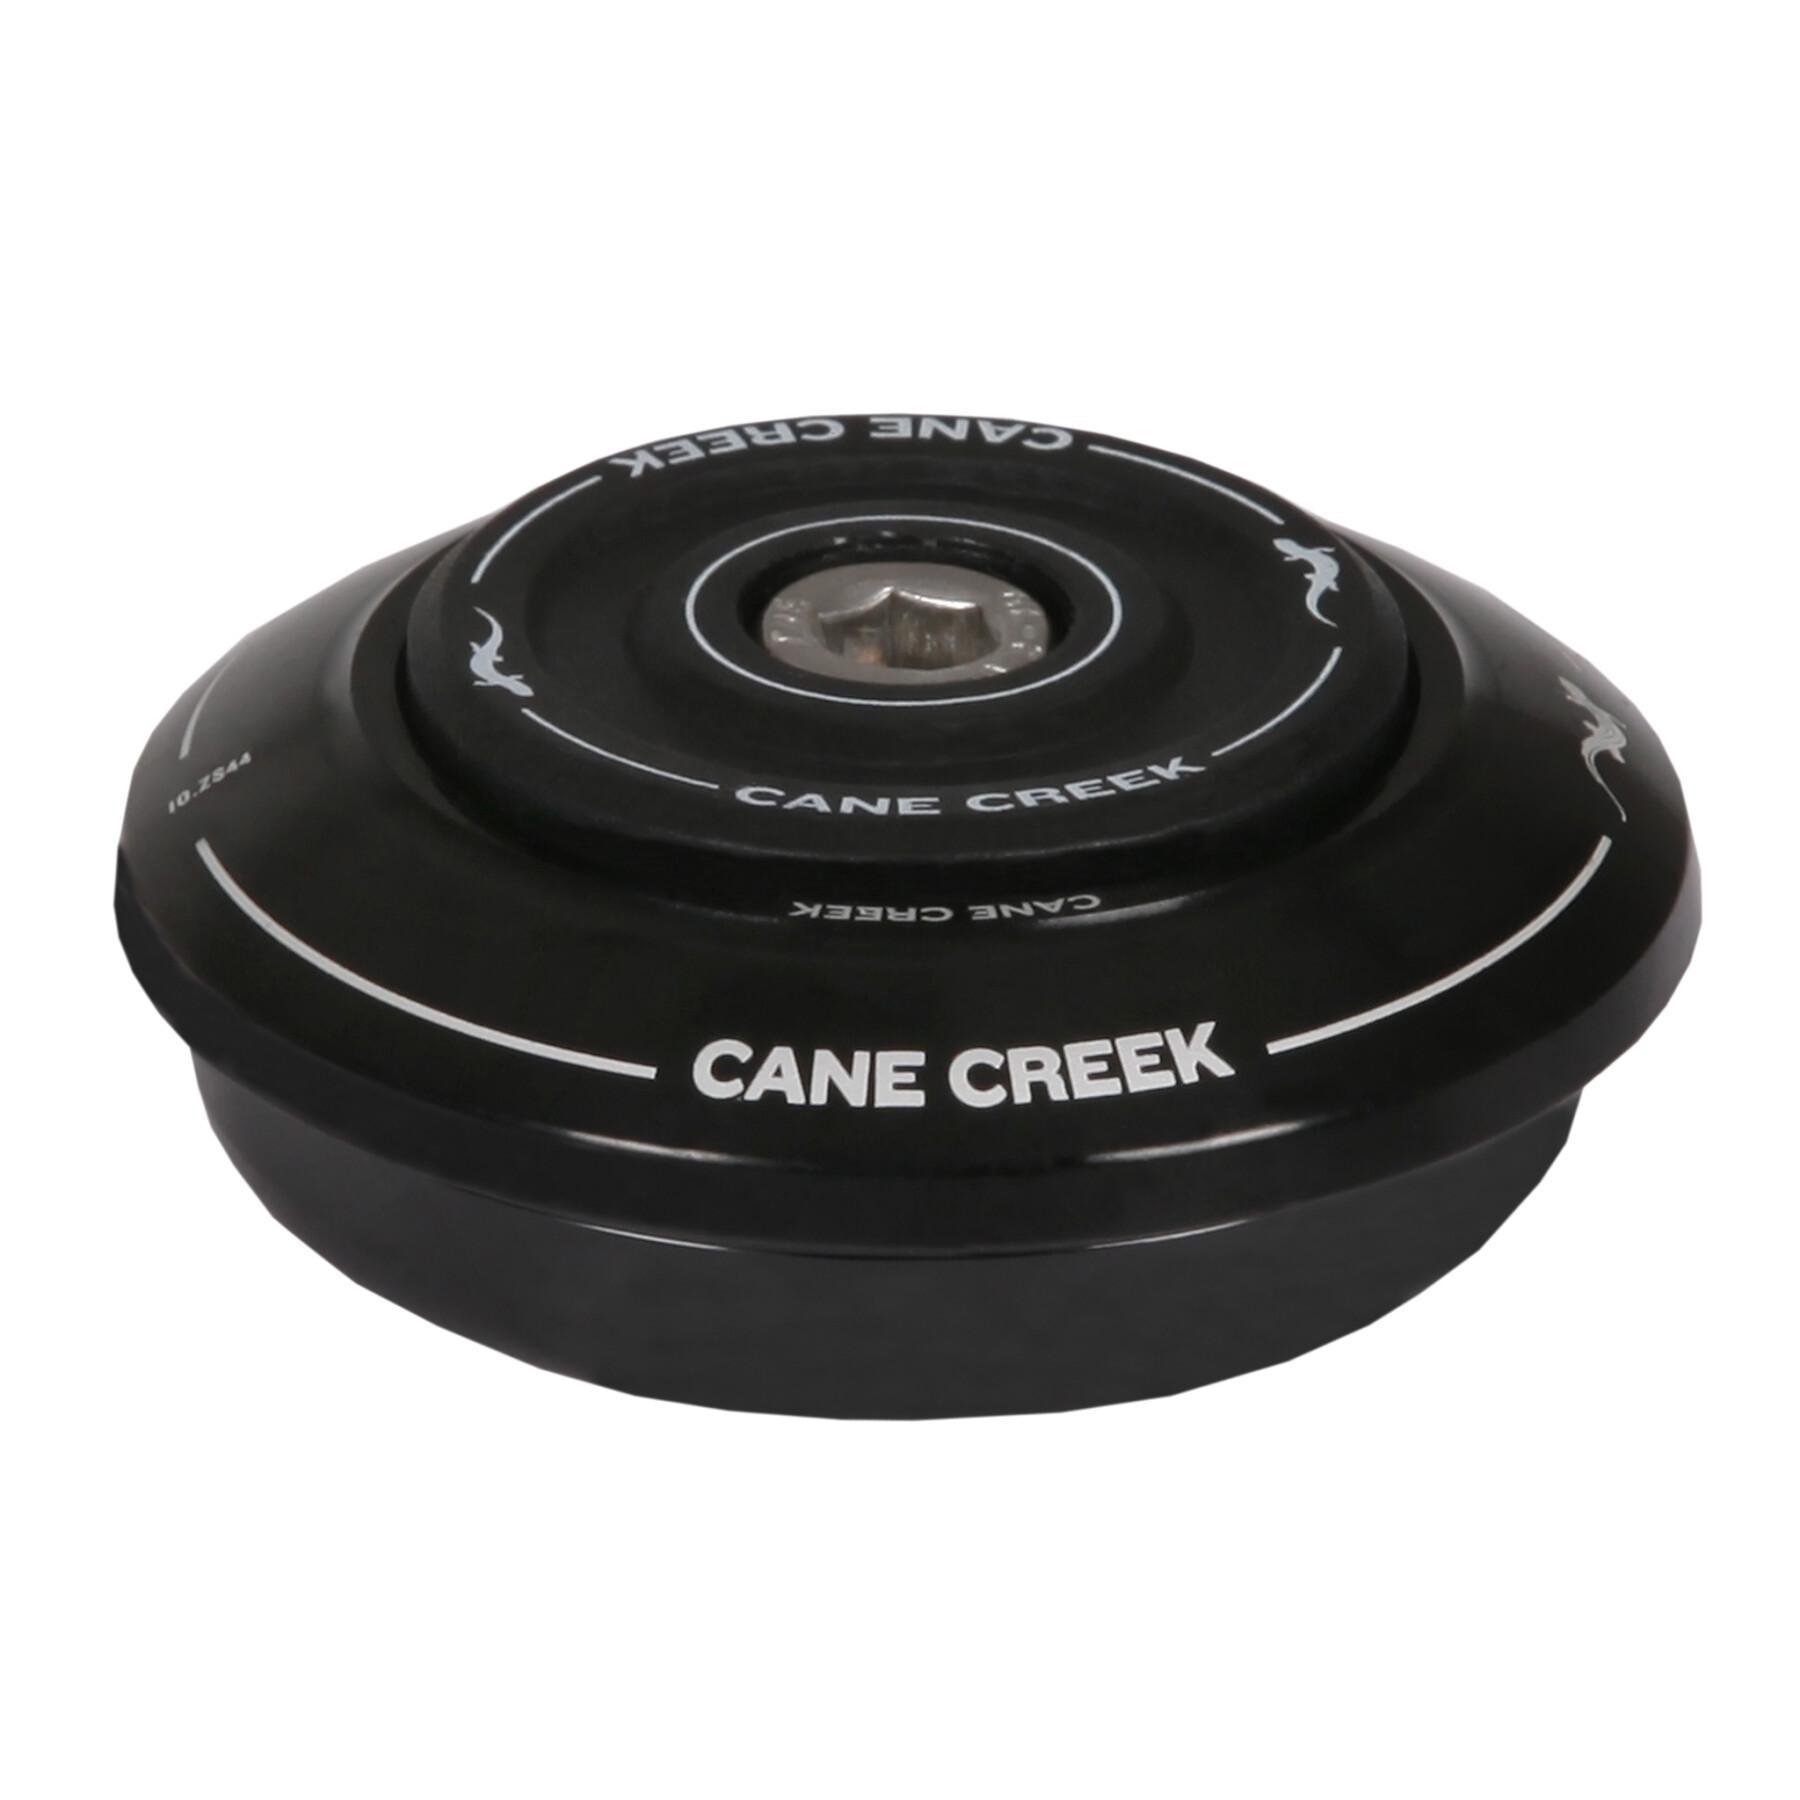 Wysoki zestaw słuchawkowy Cane Creek 10-series zs44-28,6 h8